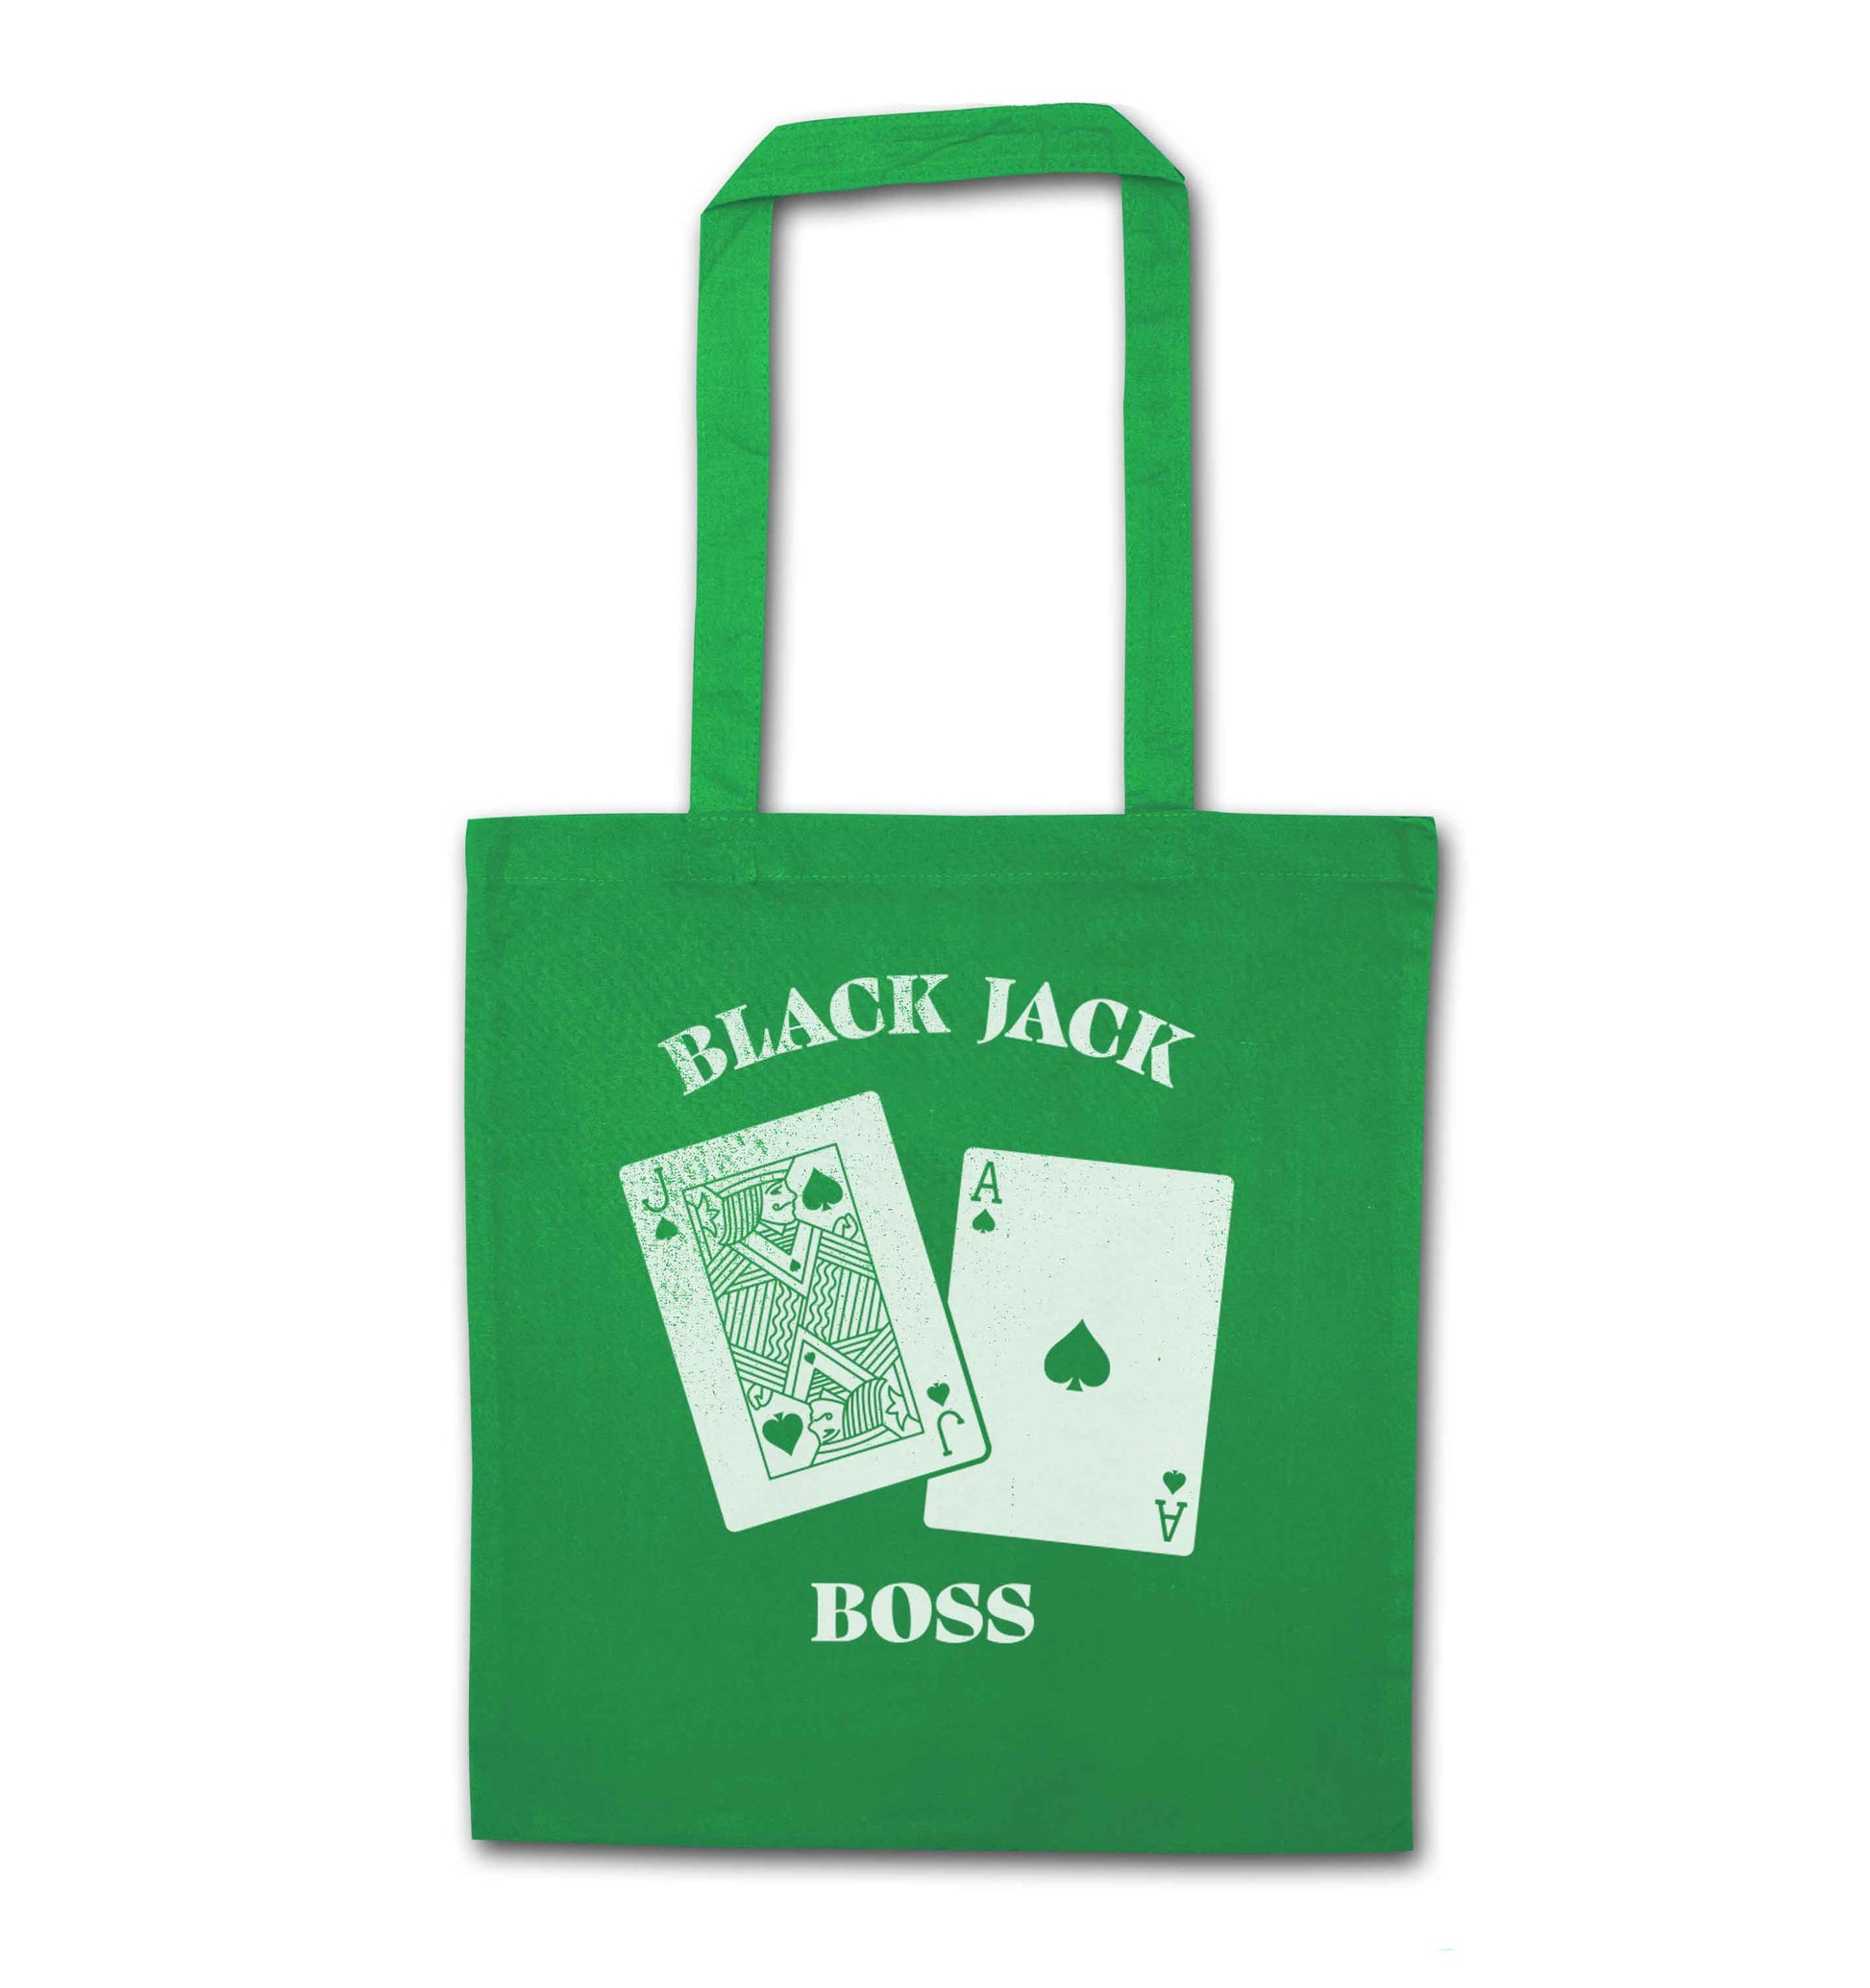 Blackjack boss green tote bag